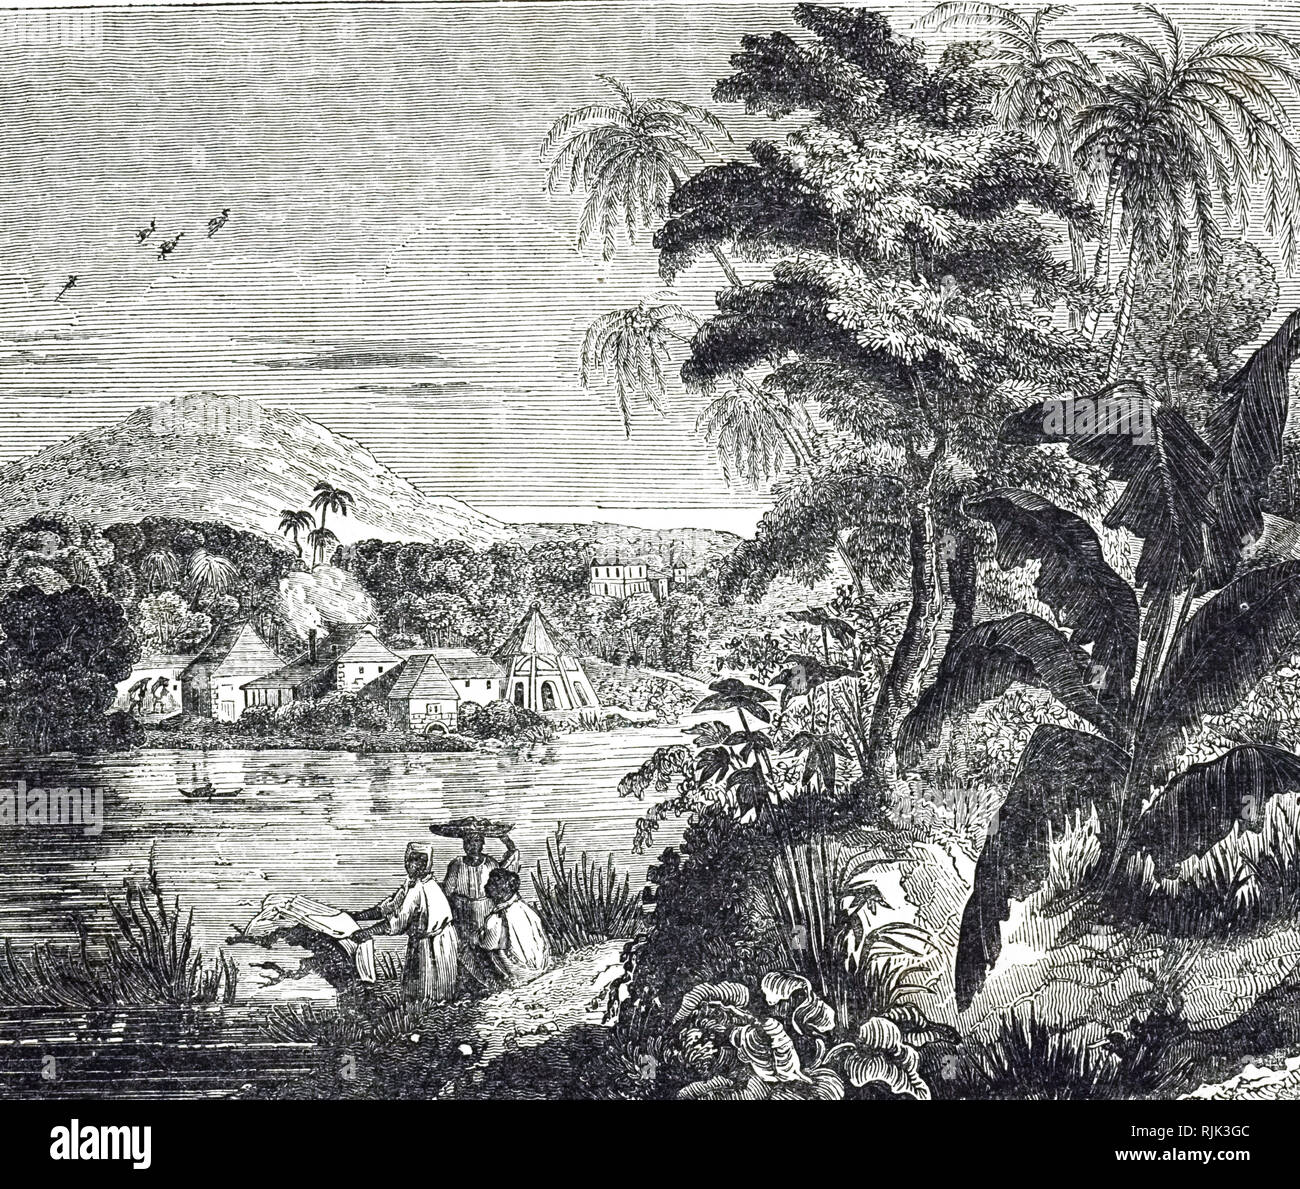 Une gravure représentant une plantation de canne à sucre de la Jamaïque au cours de la flèche du sucre. Les esclaves africains de la canne à sucre récoltée pour leurs propriétaires britanniques. En date du 19e siècle Banque D'Images